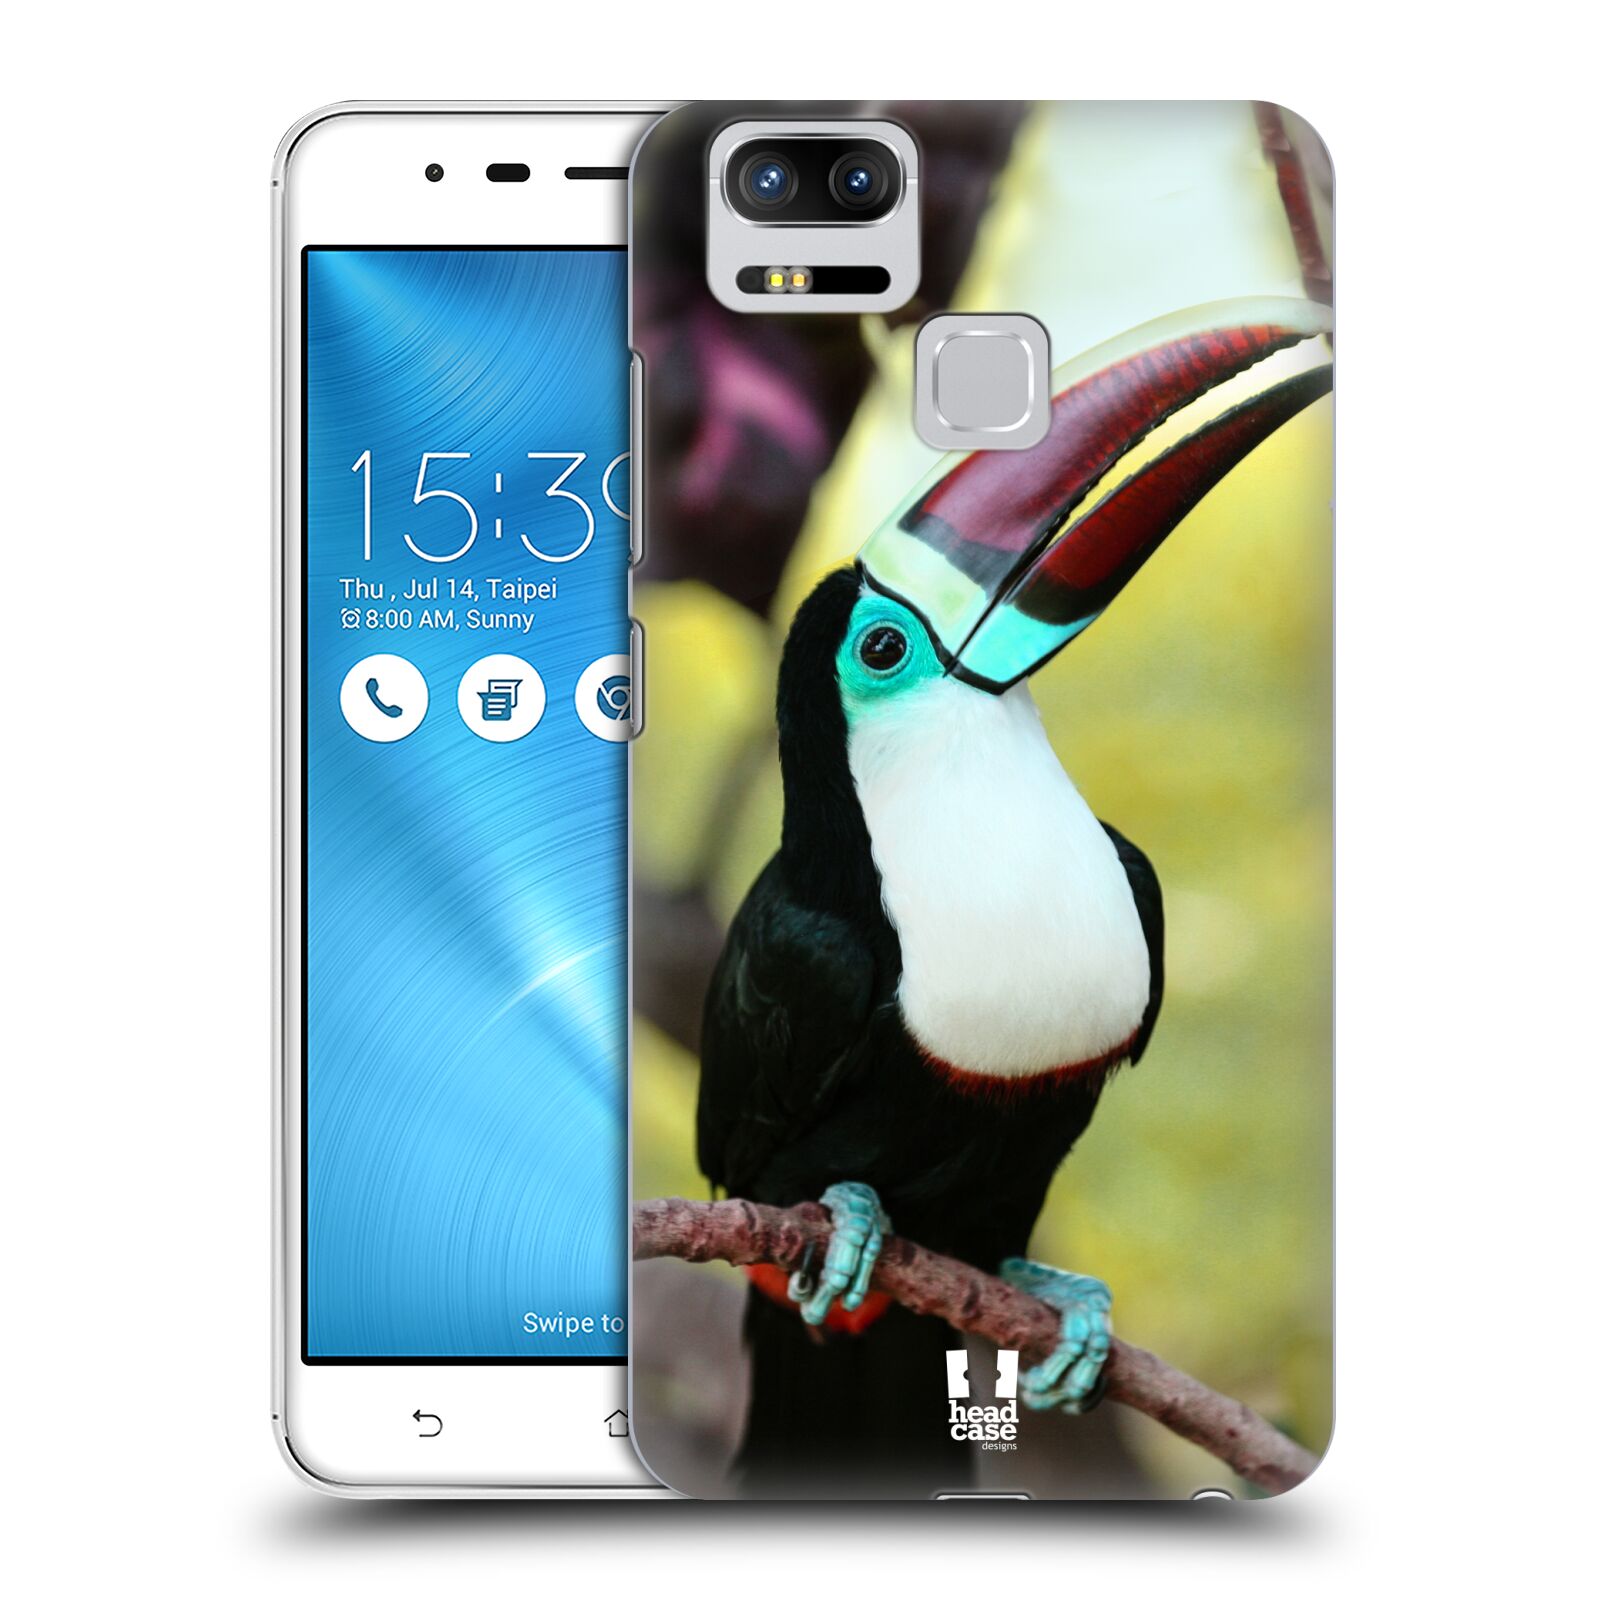 HEAD CASE plastový obal na mobil Asus Zenfone 3 Zoom ZE553KL vzor slavná zvířata foto tukan